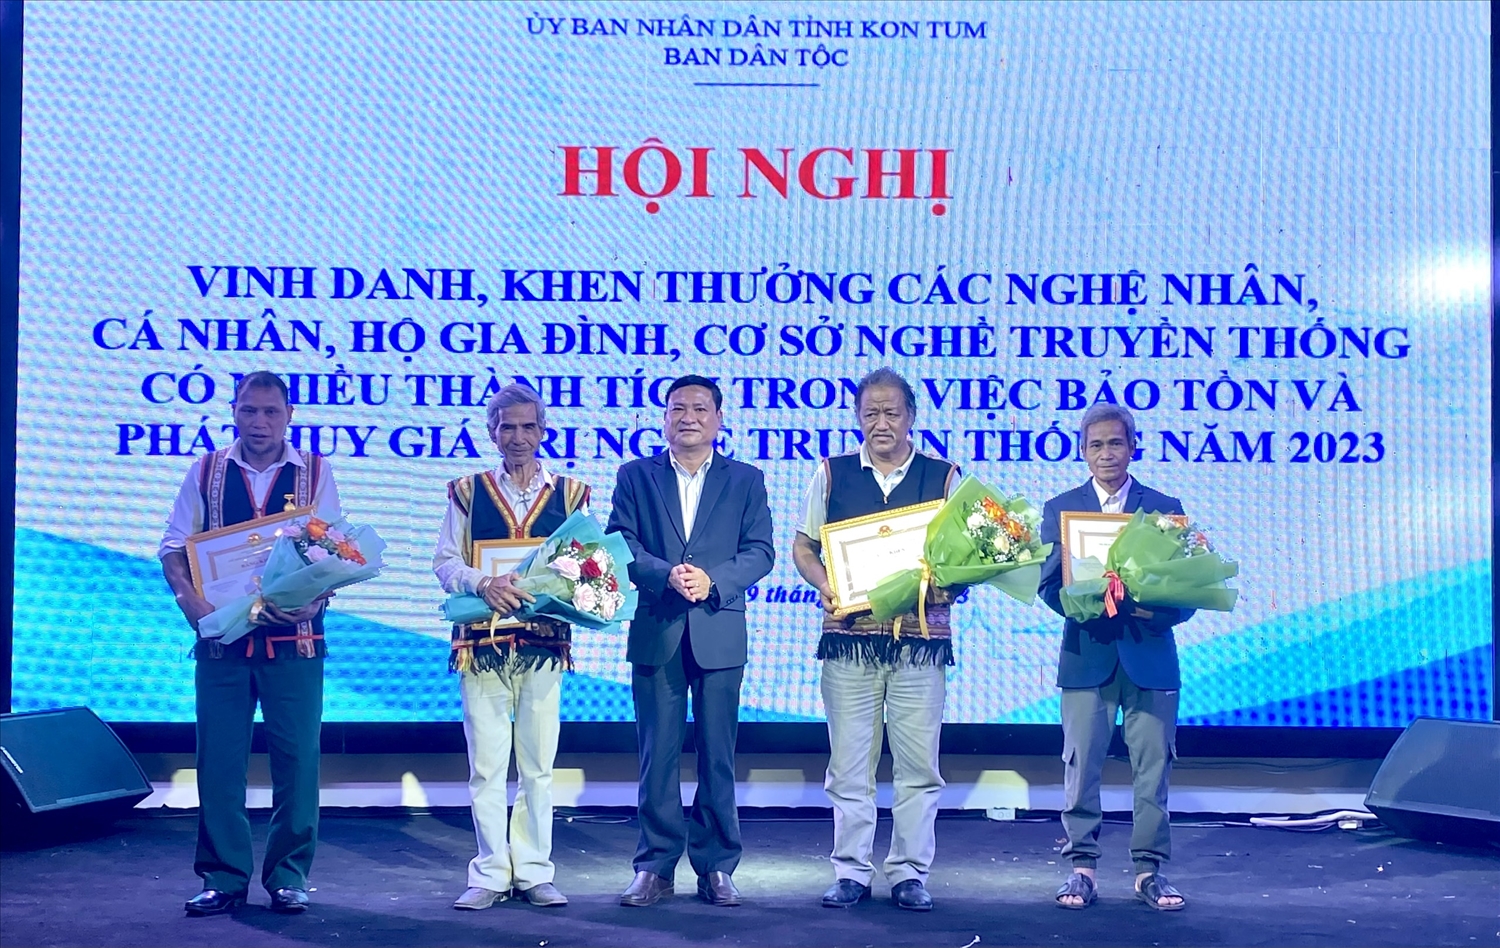 Ban Dân tộc tỉnh Kon Tum vinh danh những nghệ nhân tiêu biểu trong việc bảo tồn và phát huy giá trị các nghề truyền thống